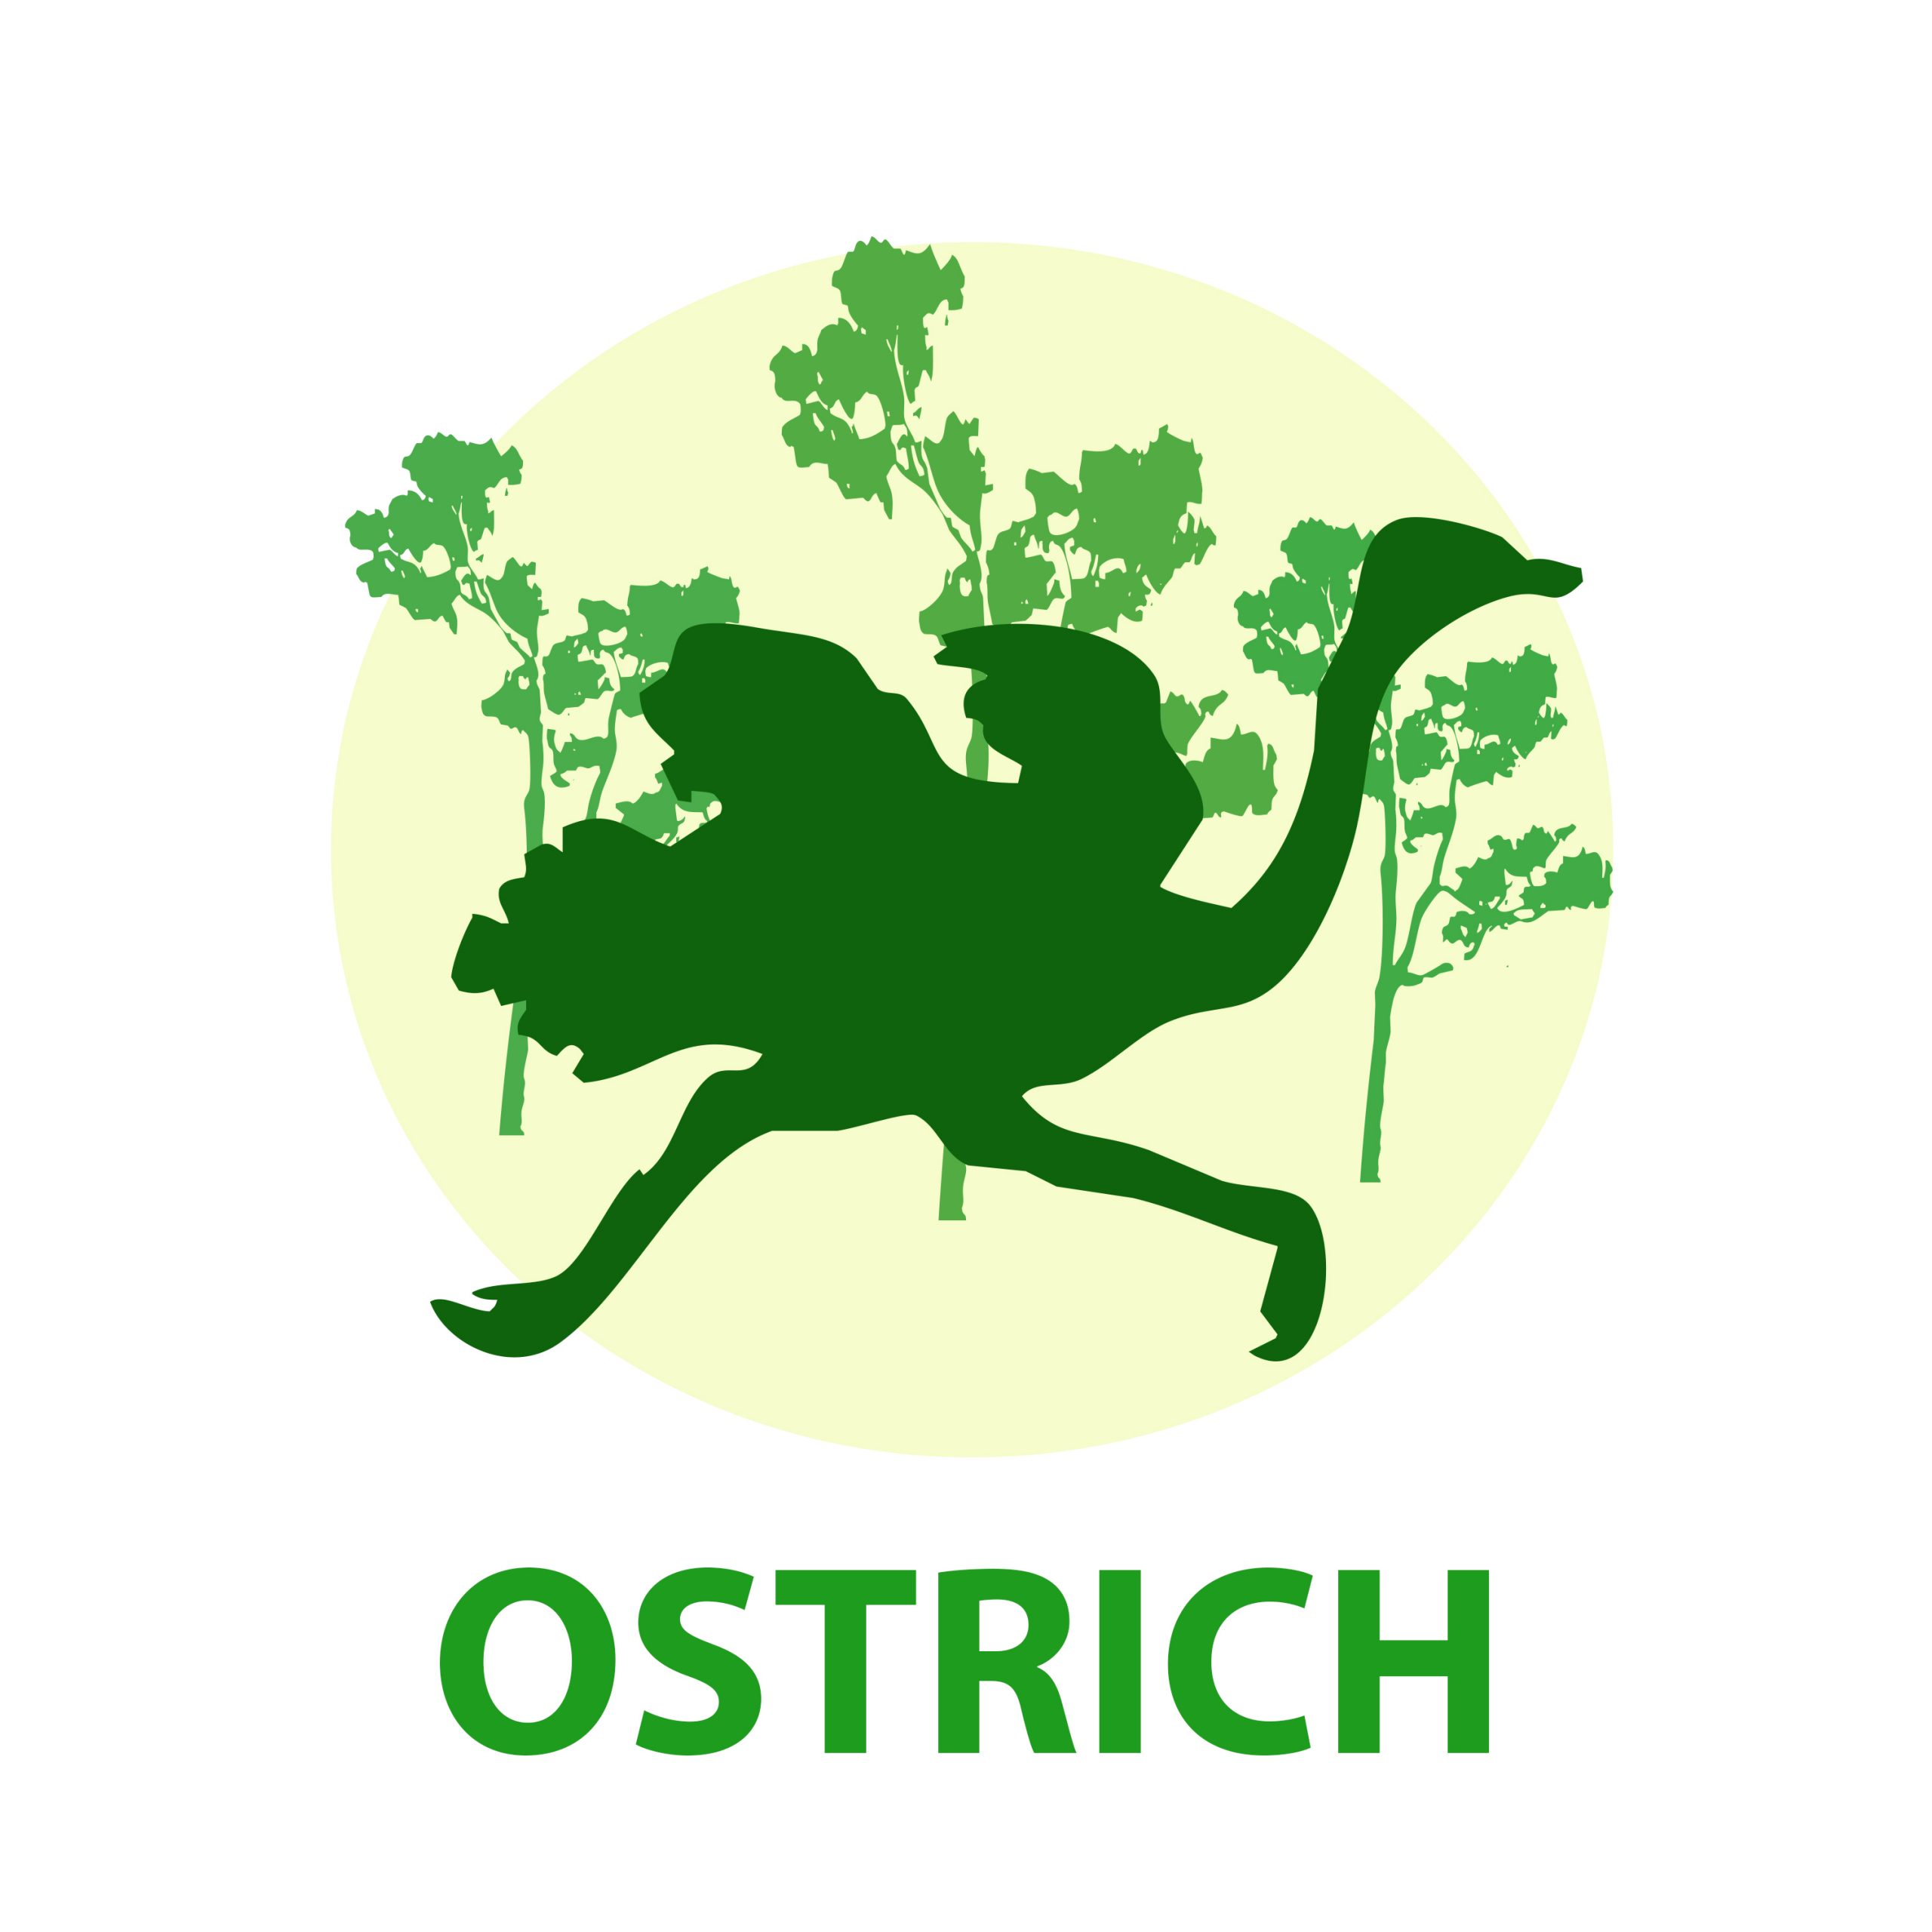 An ostrich illustration